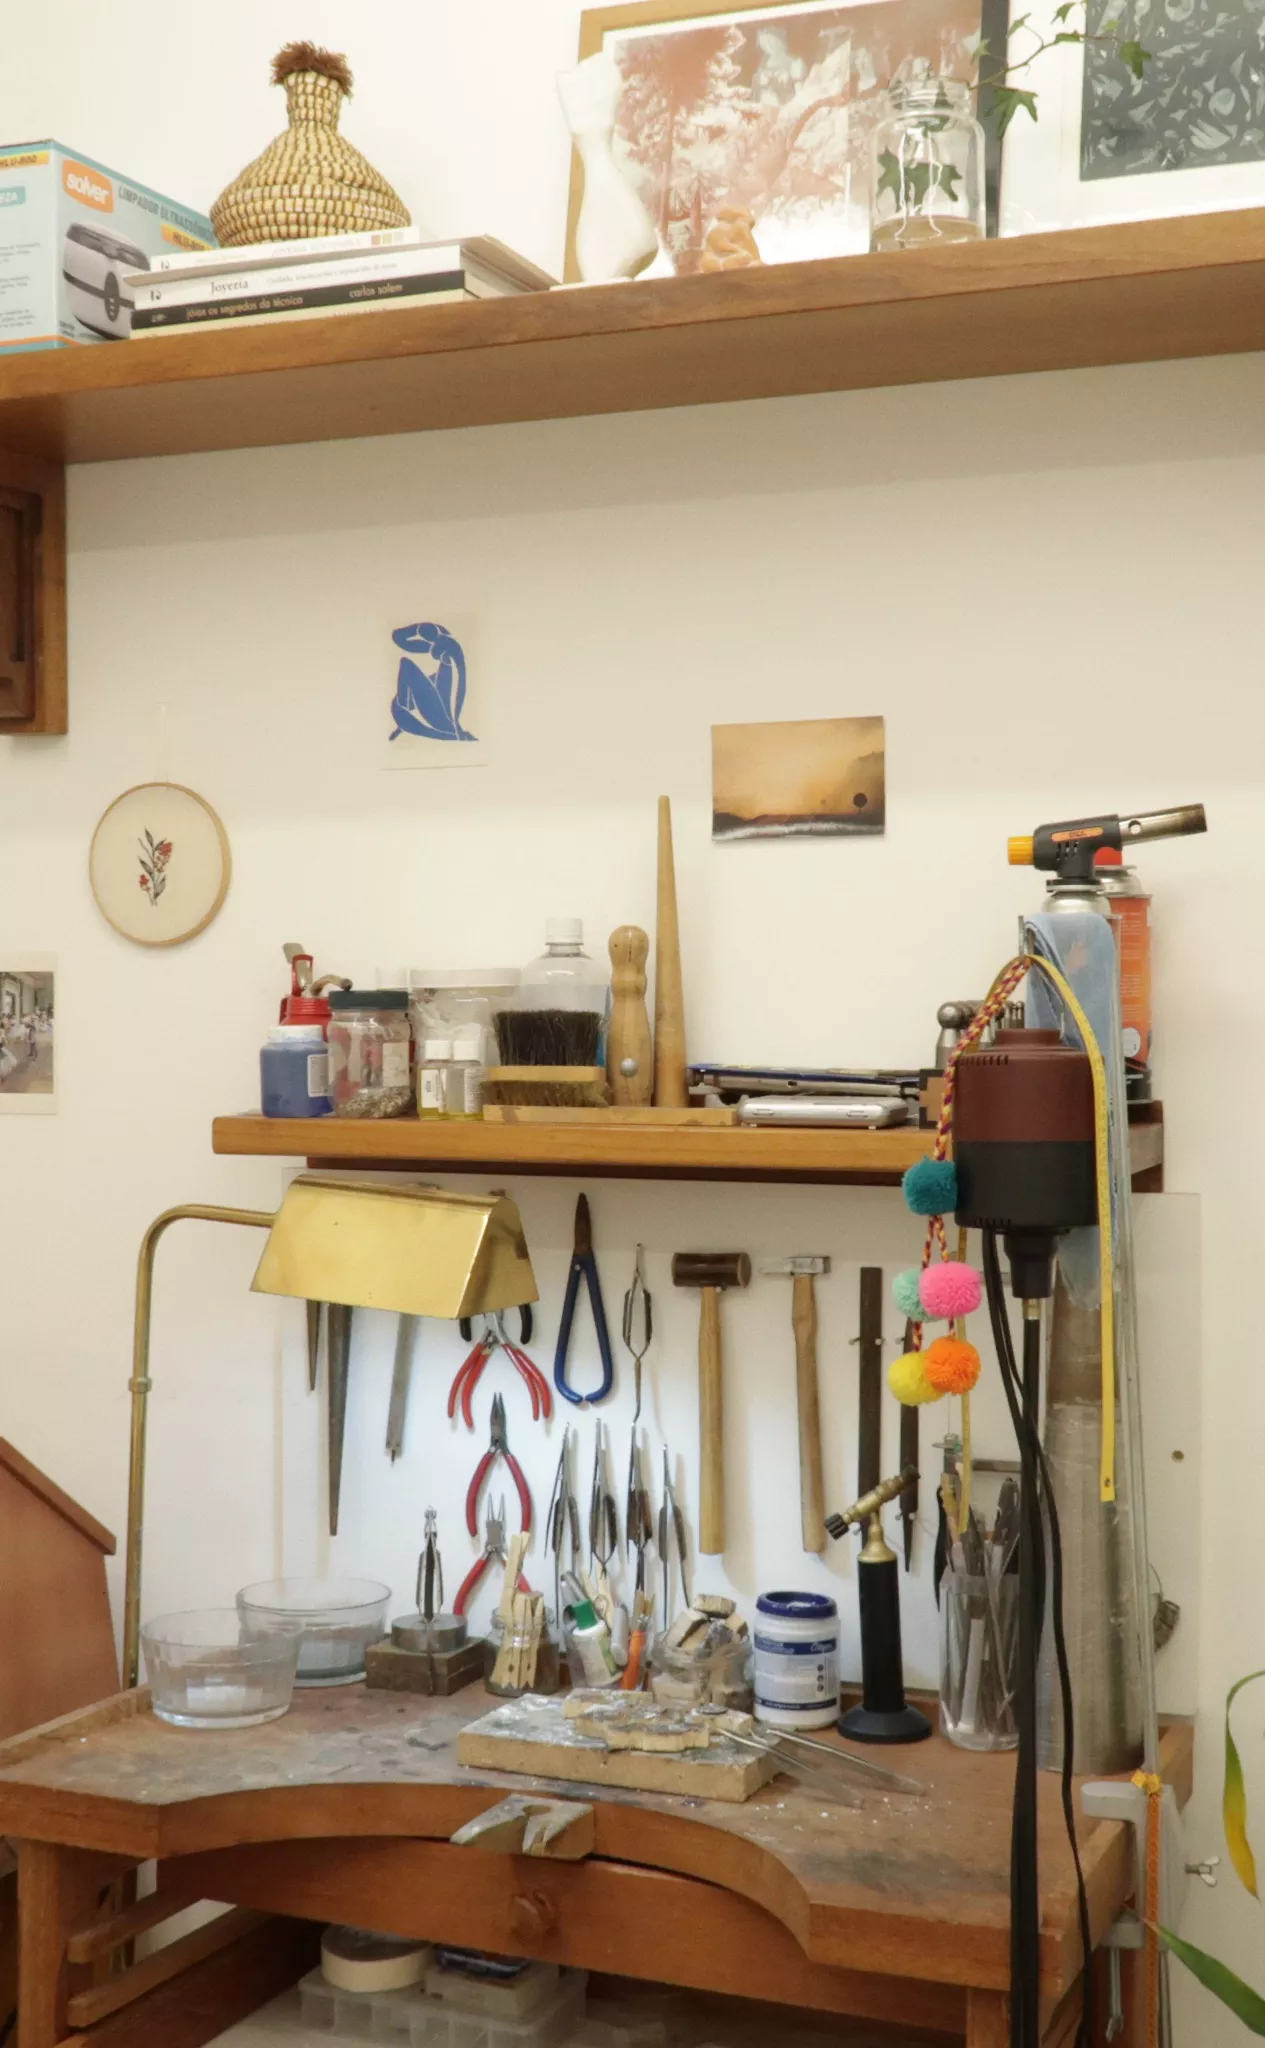 Interior do estabelecimento Demgo. Atelier com ferramentas, mesa de trabalho e equipamentos.